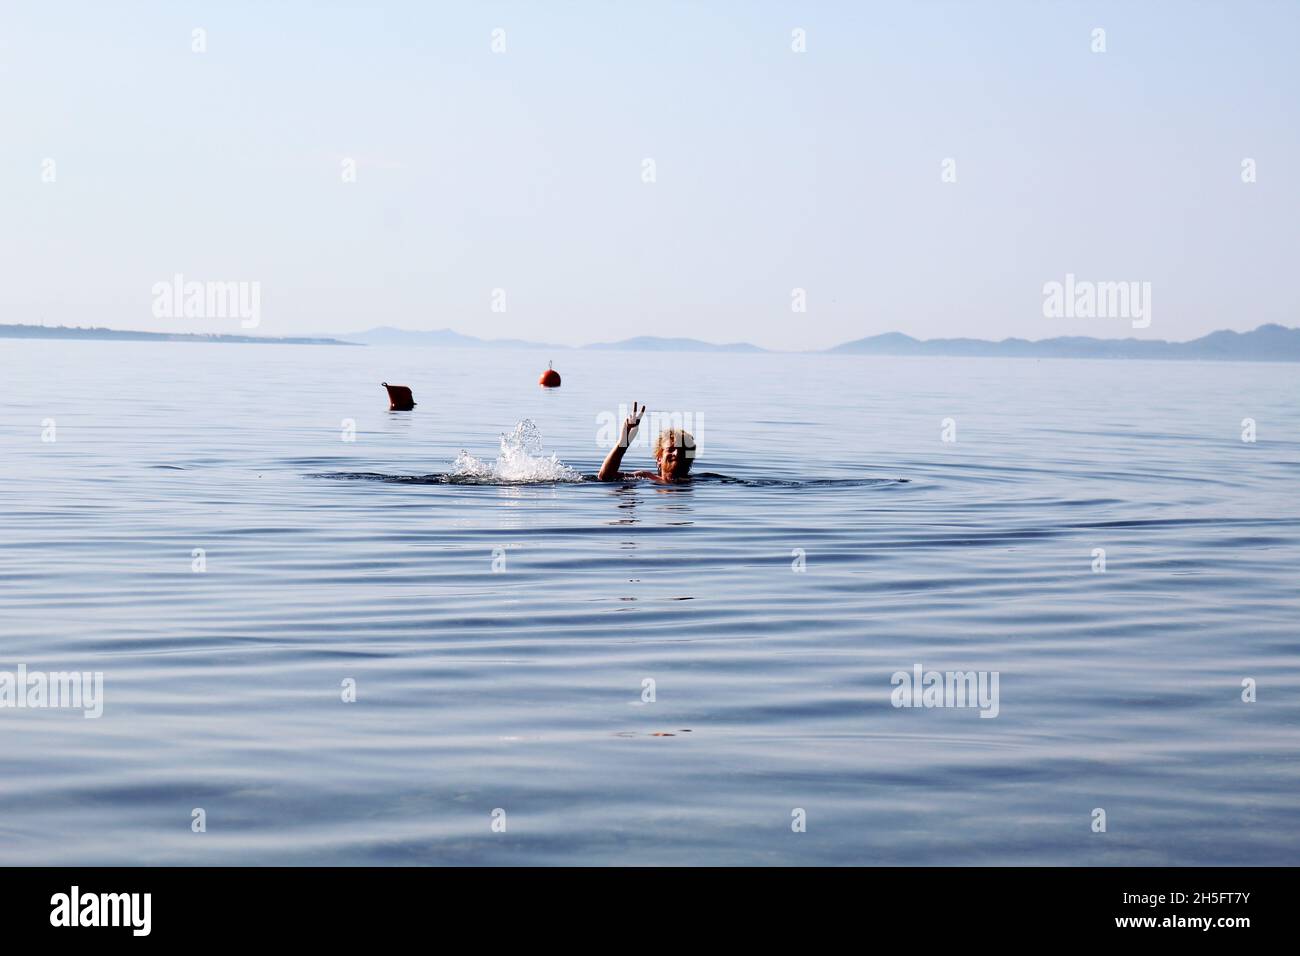 Mann schwimmt im Meer. Kopf eines Mannes, der aus dem Wasser ragt. Der Mann macht ein Peace Zeichen. Bojen im Hintergrund. Vir, Kroatien. Stock Photo